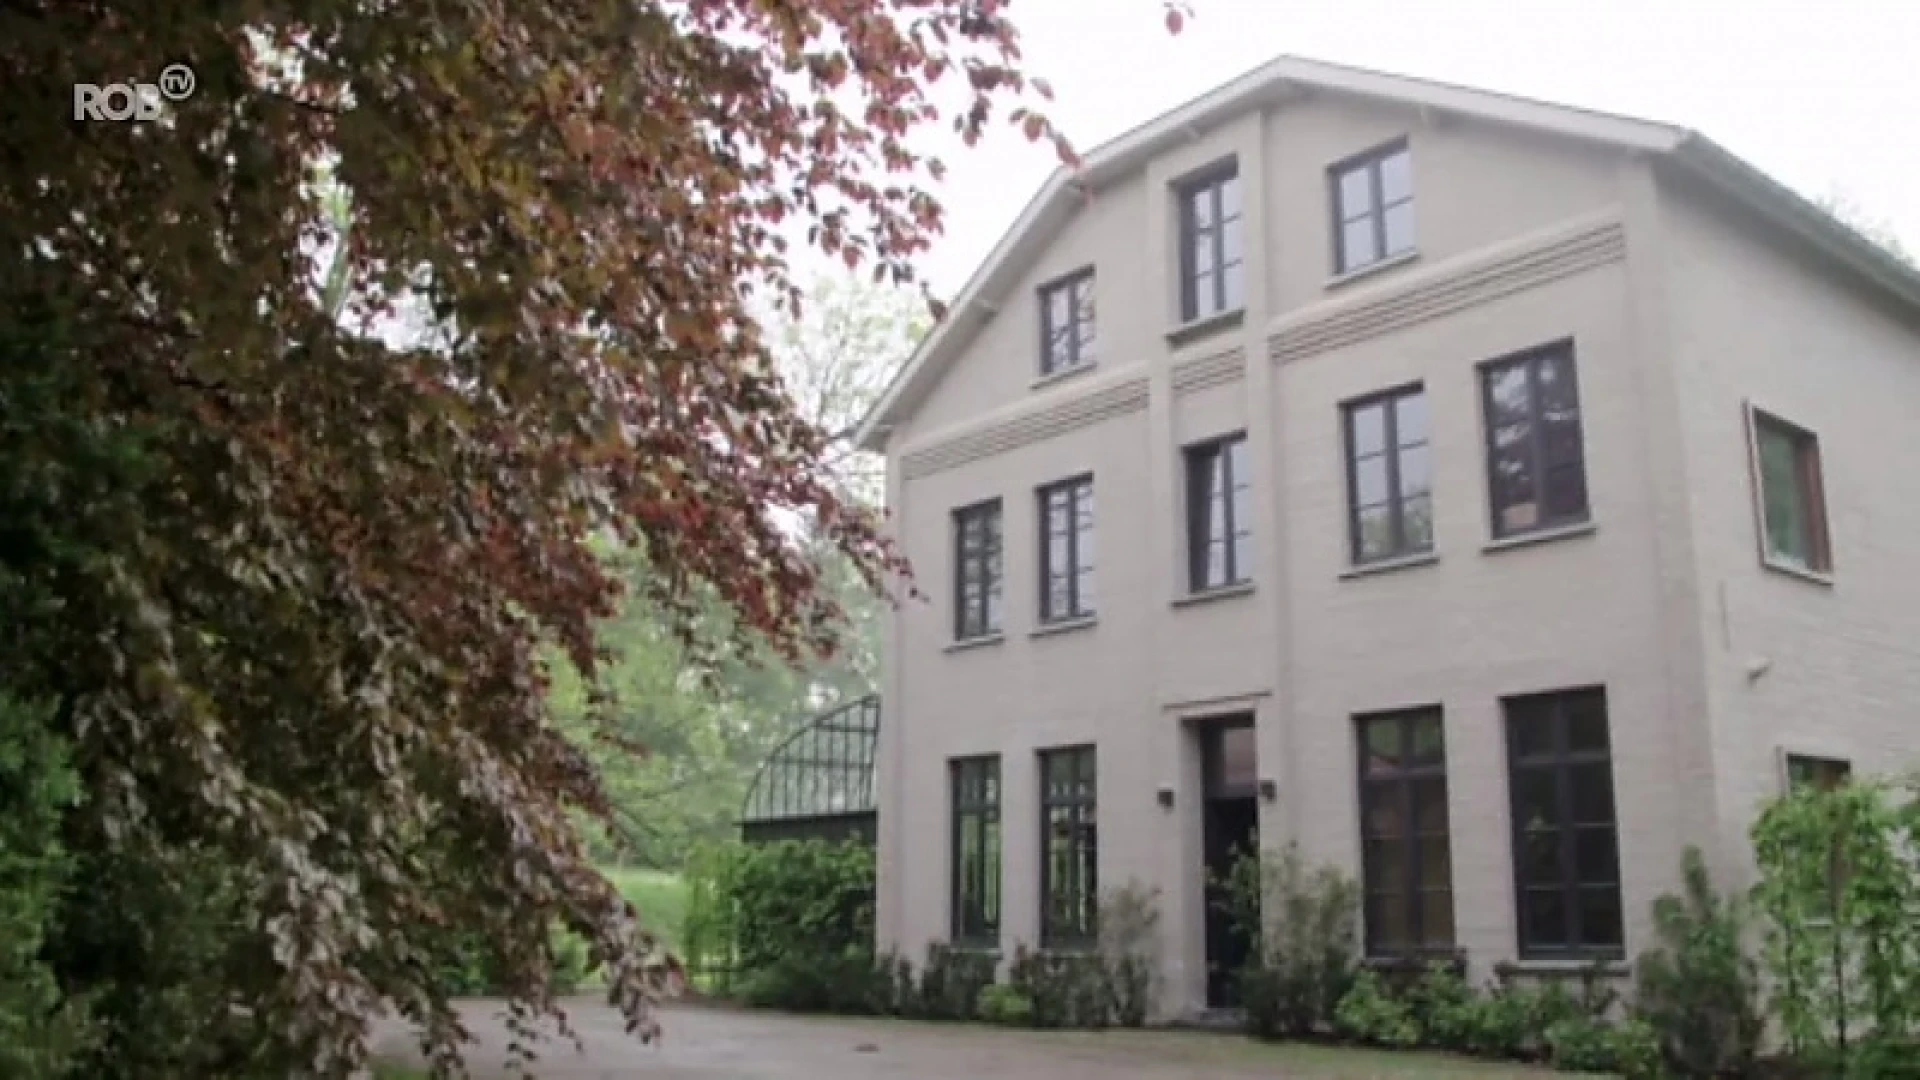 Wonen - Afl. 6: Vervallen afgelegen huis uit 1927 wordt sfeervol landhuis in Bertem